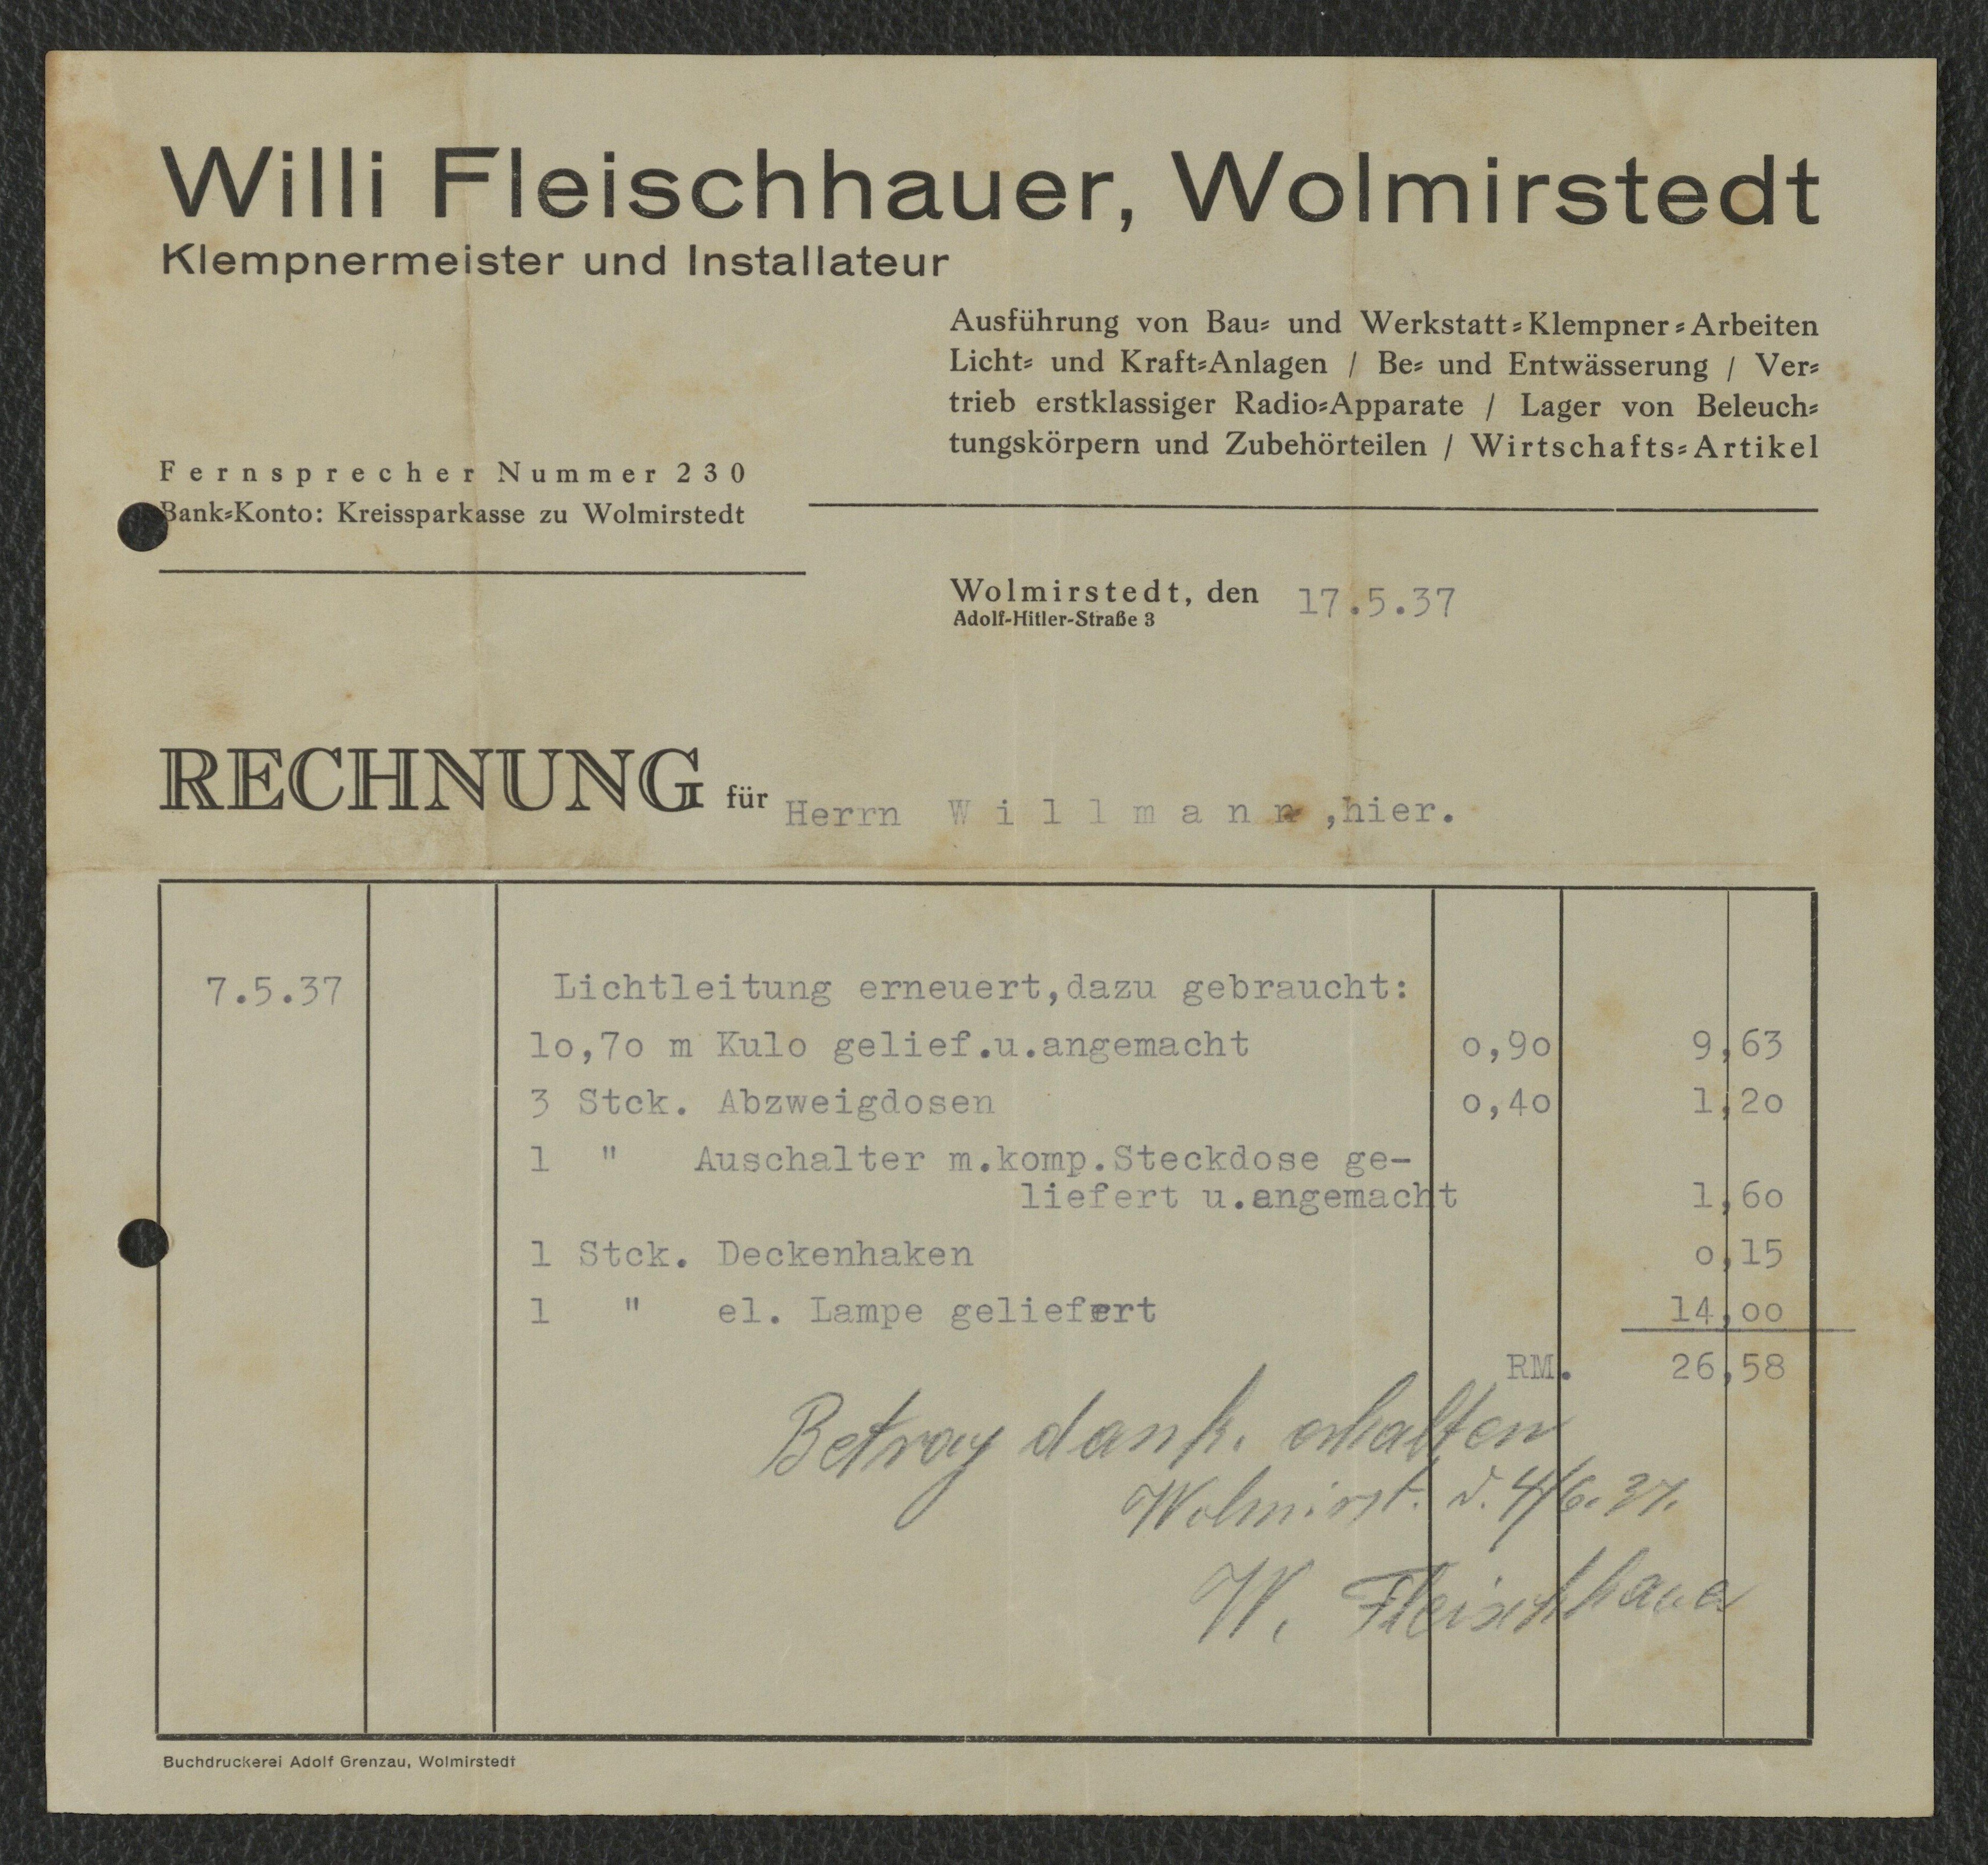 Rechnung Klempnermeister und Installateur Willi Fleischhauer für Willmann, Wolmirstedt, 17.05.1937 (Museum Wolmirstedt RR-F)